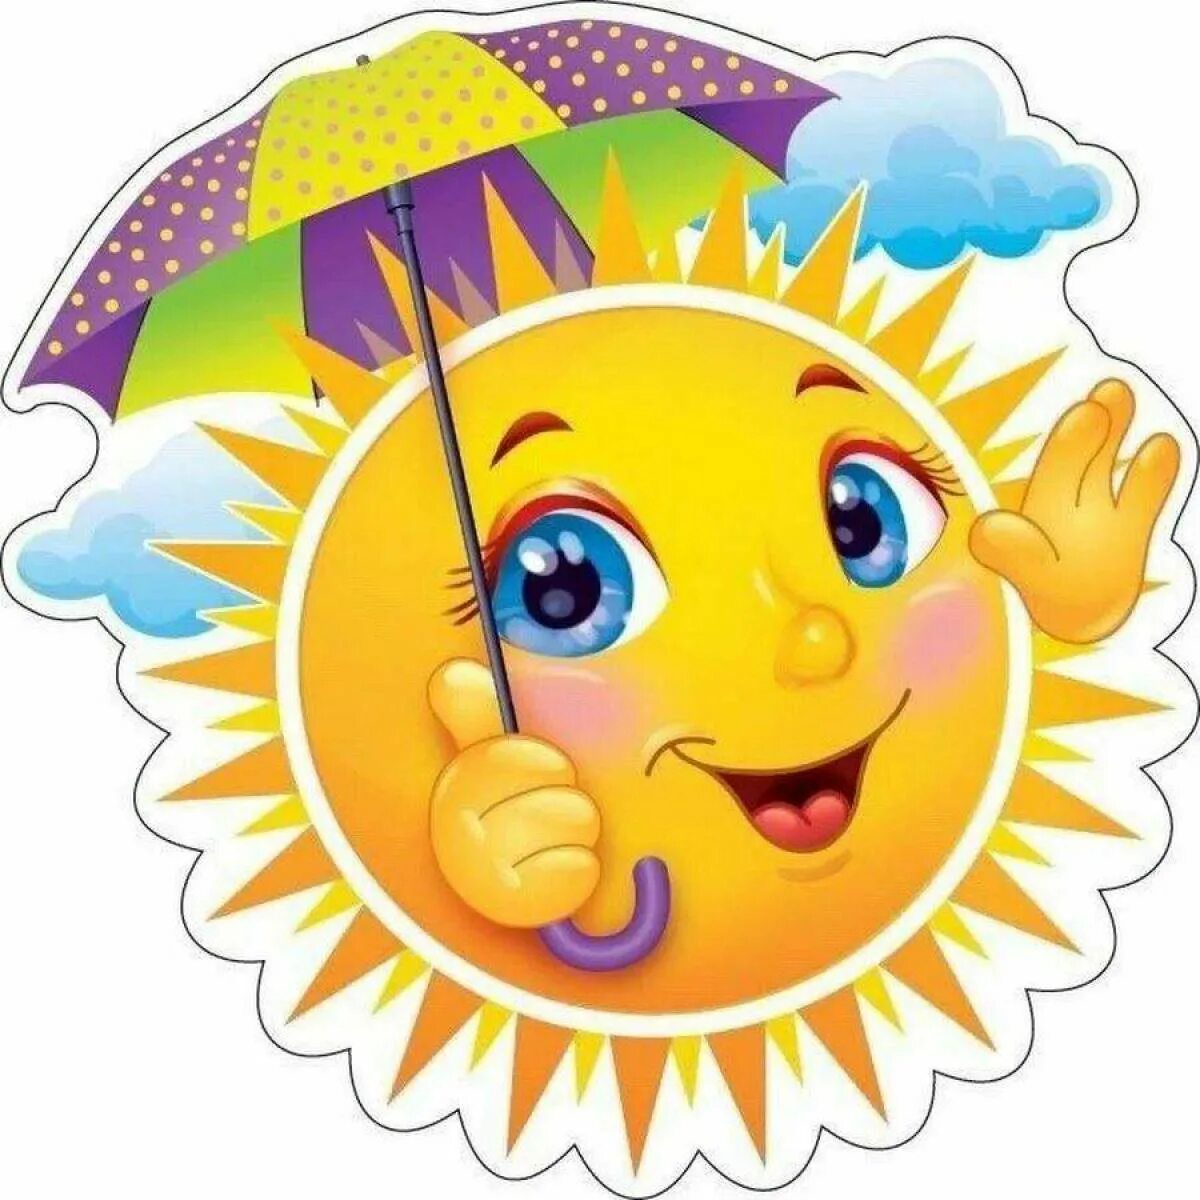 Картинка солнышко. Солнце для детсада. Солнышко улыбается. Солнышко для детей. Изображения солнца для детсада.